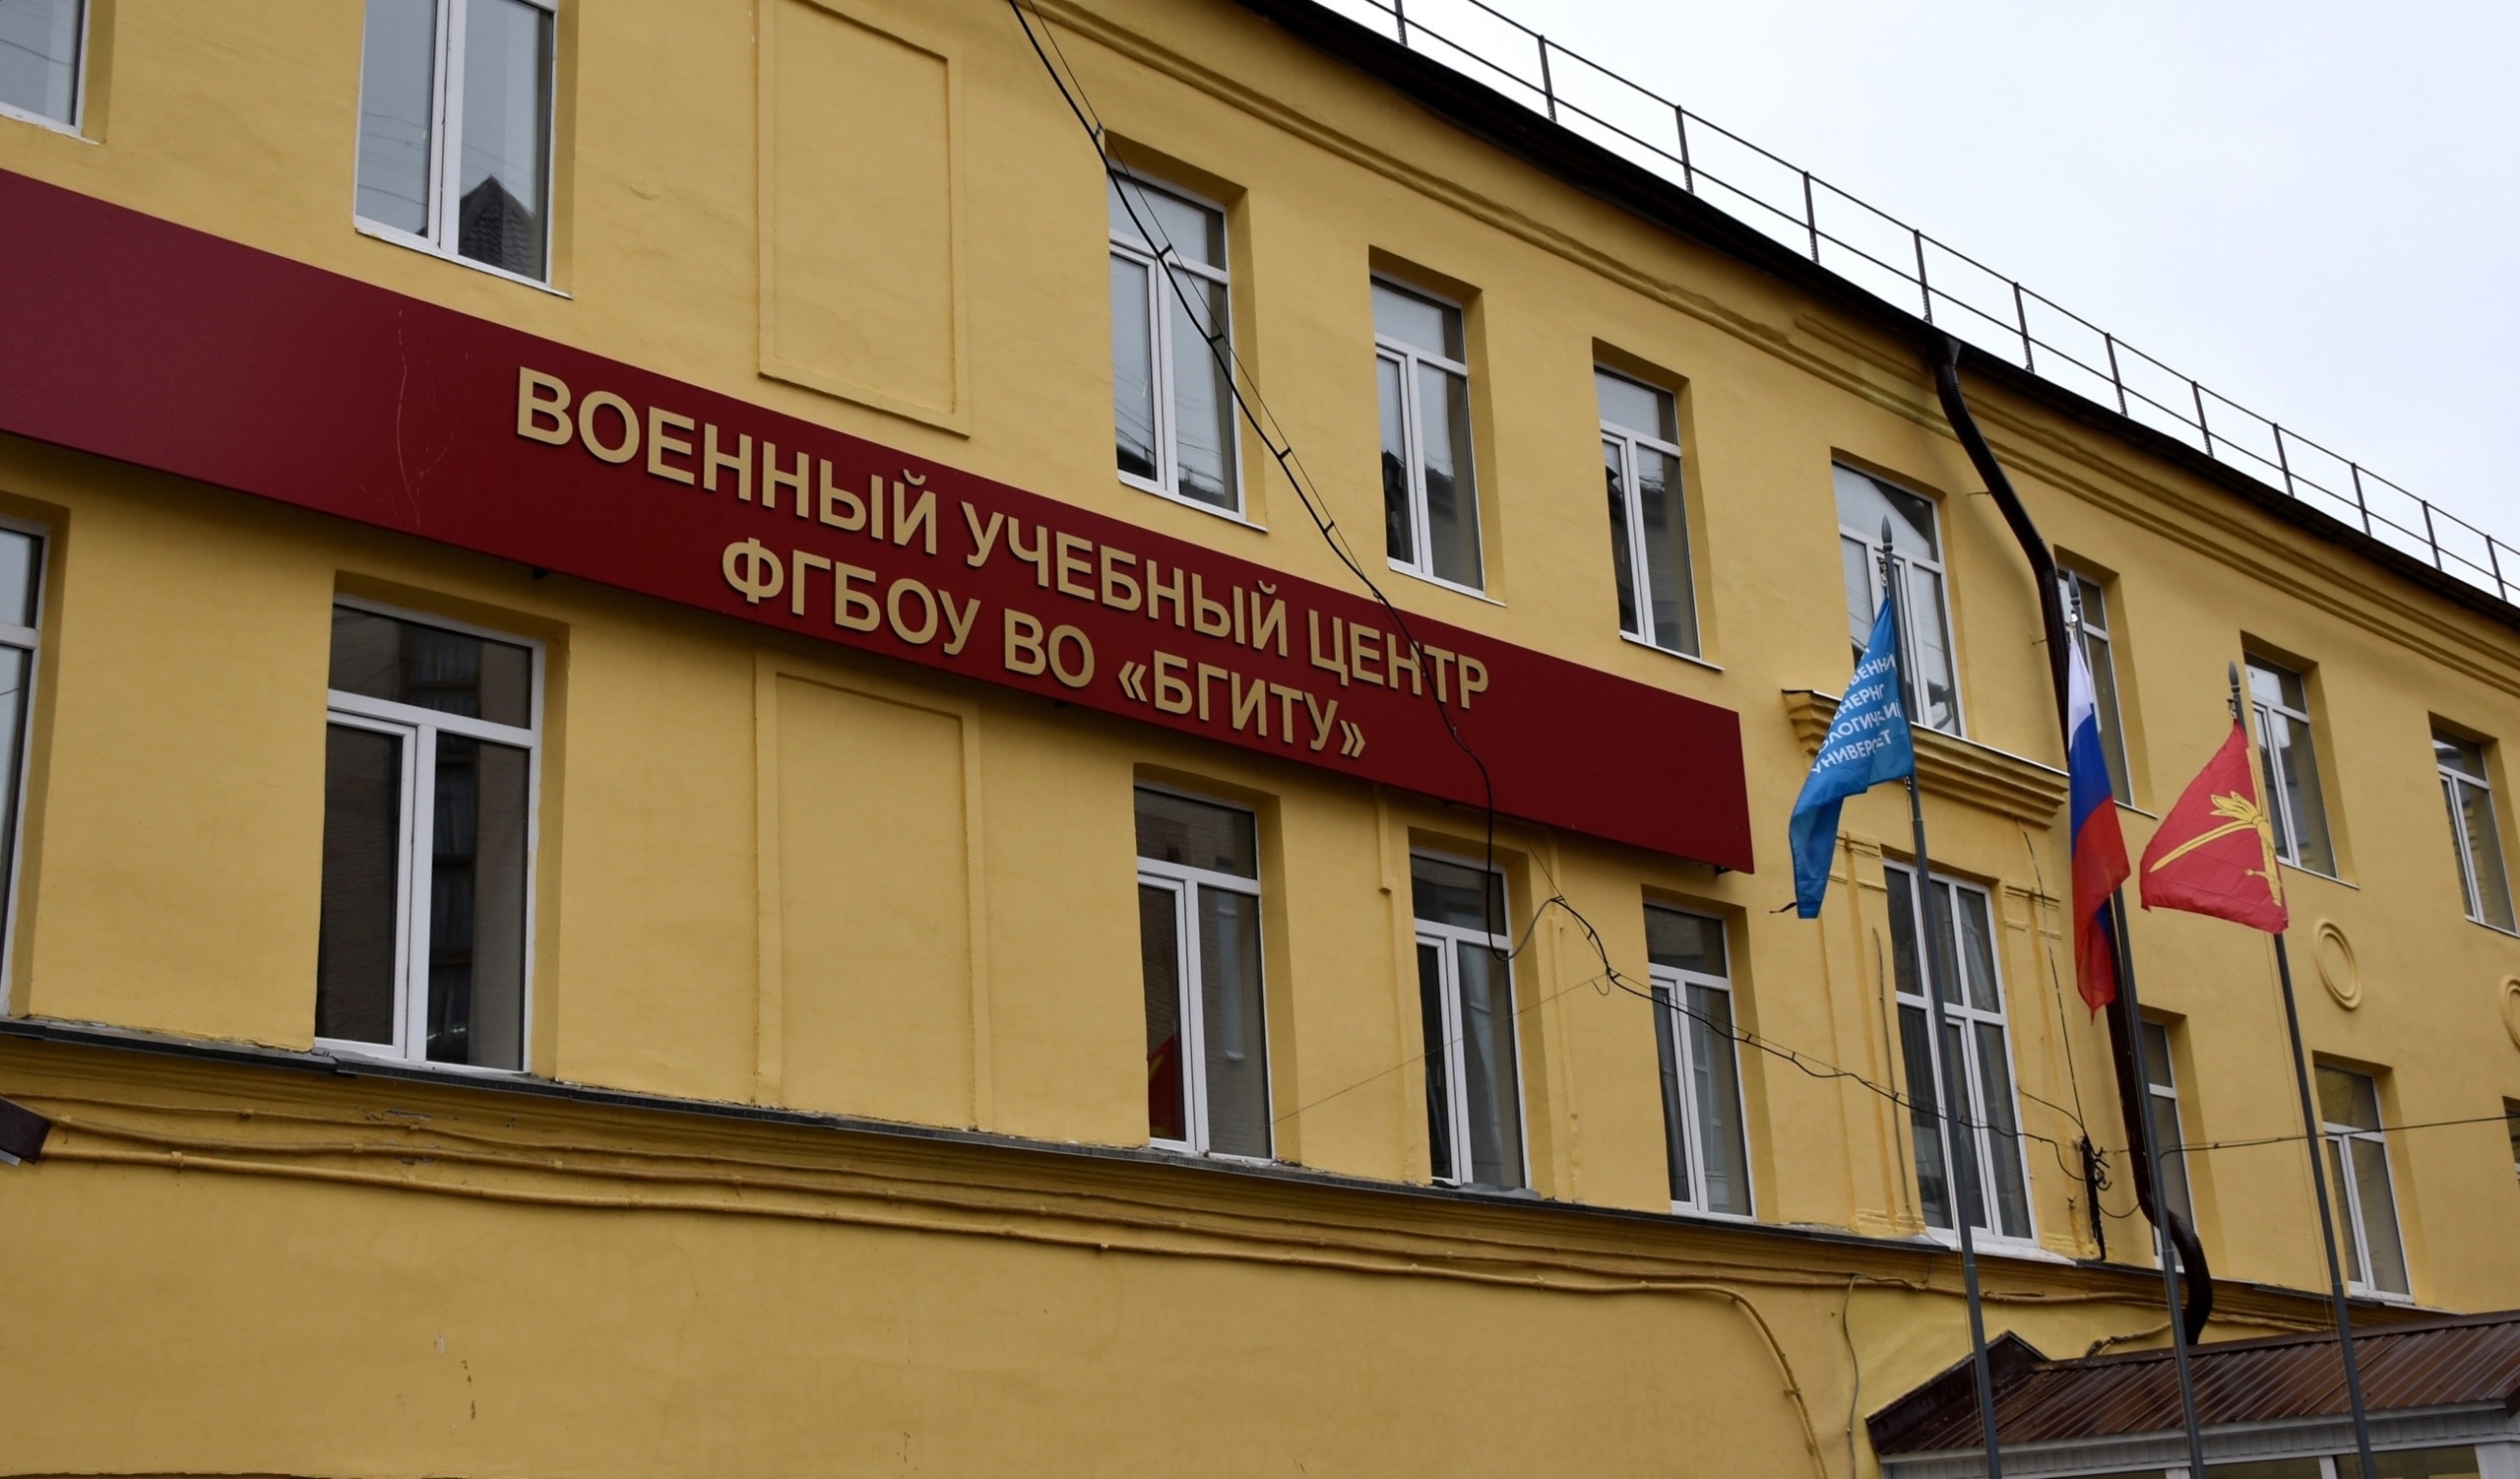 Деятельность Военного учебного центра при БГИТУ отмечена департаментом внутренней политики Брянской области